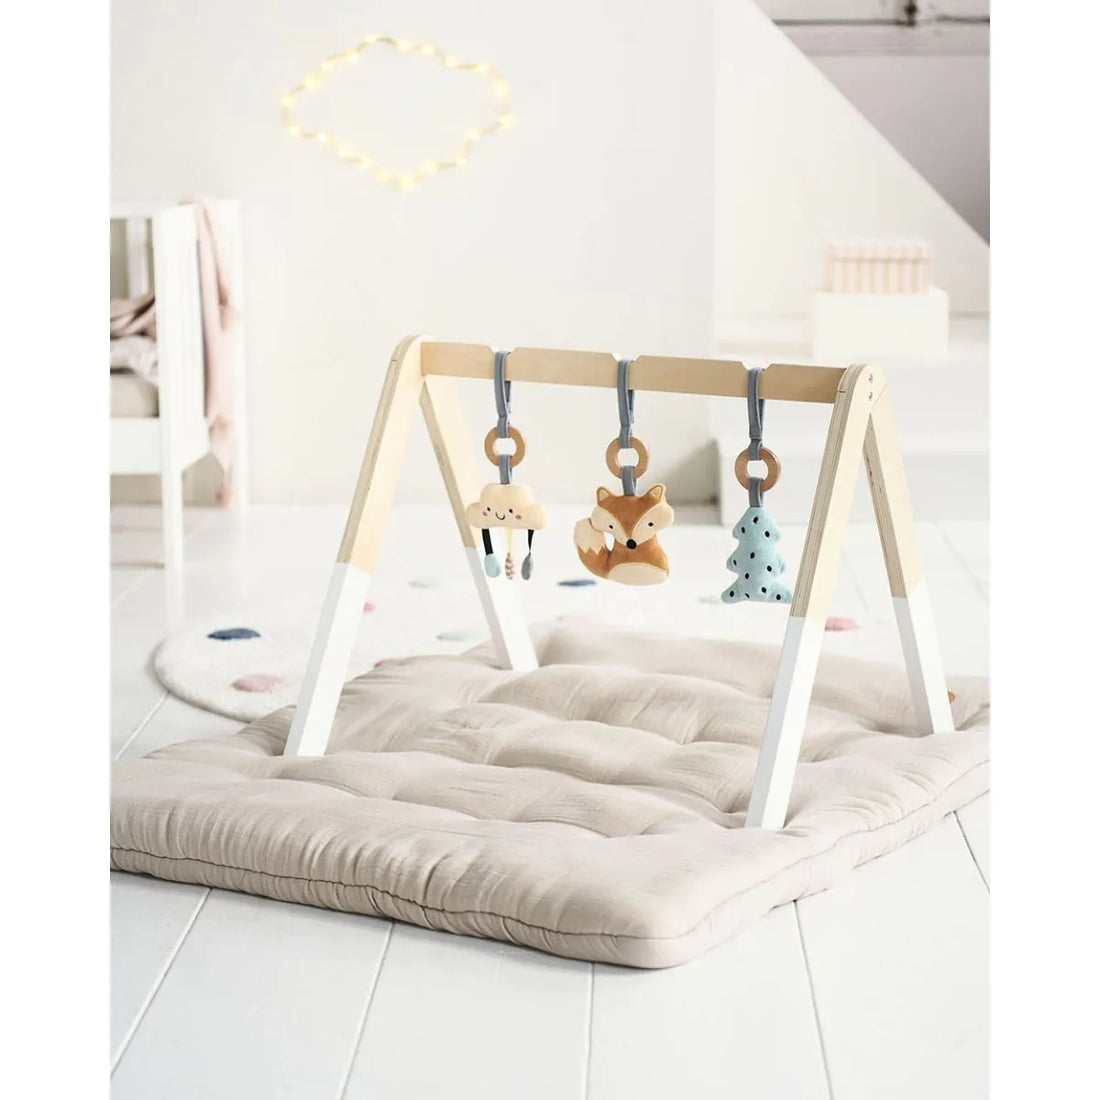 Portique d'éveil pour bébé en bois - Inclus 3 accessoires